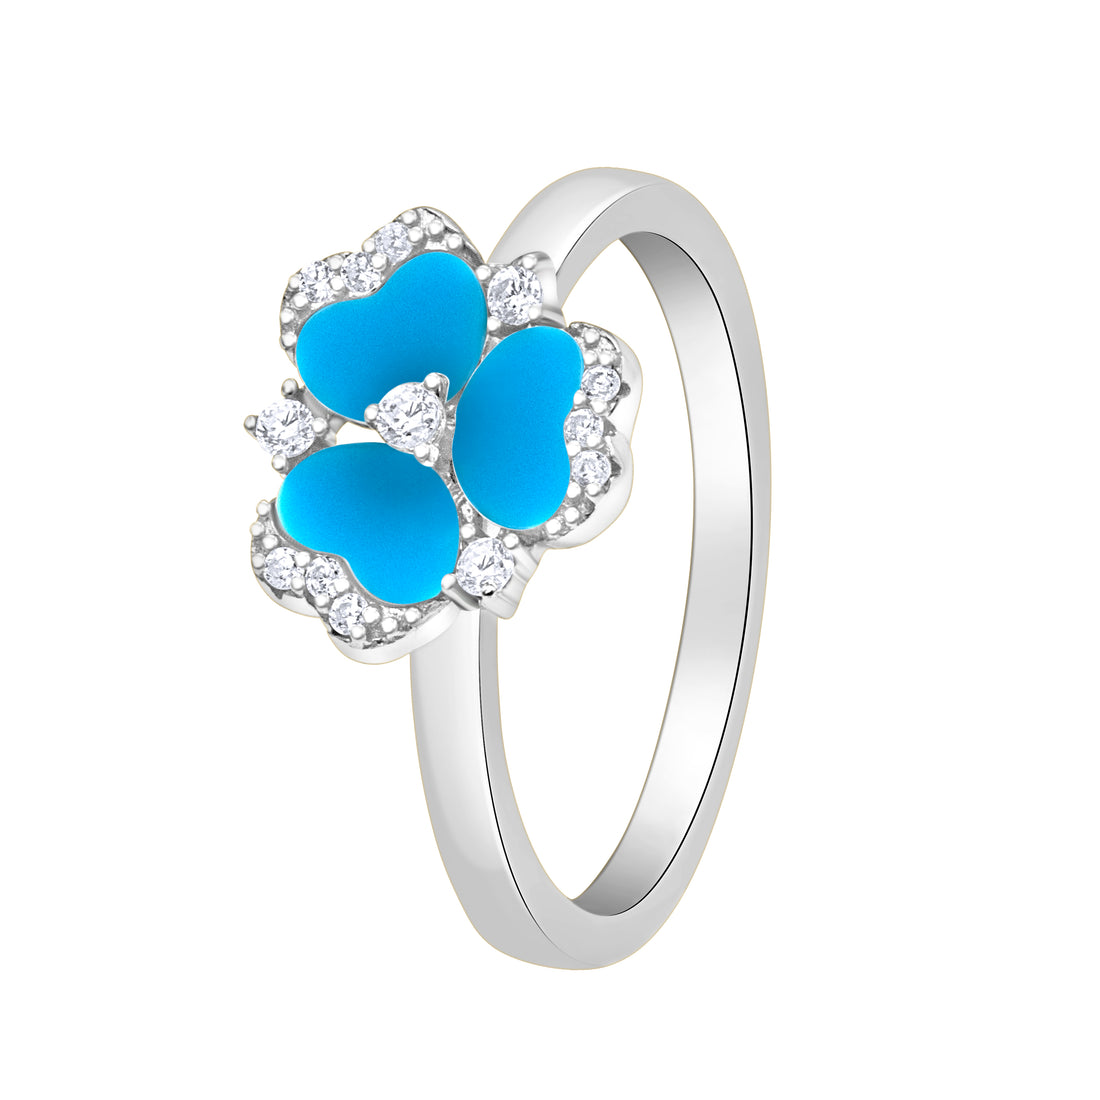 Violet Blue Silver Color Ring